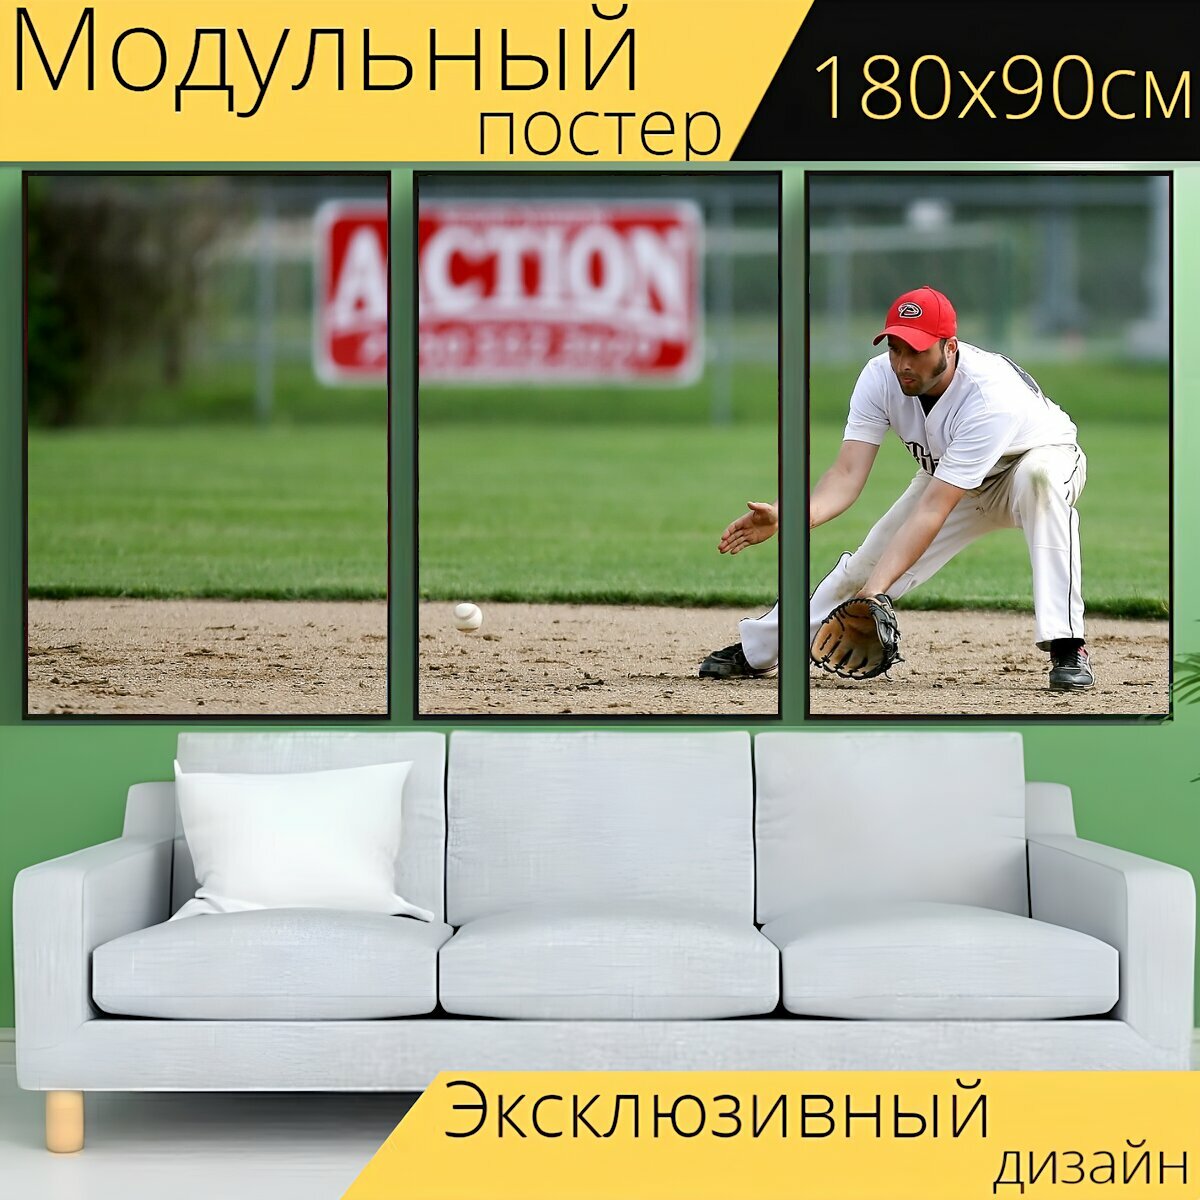 Модульный постер "Бейсбол, филдер, игрок" 180 x 90 см. для интерьера